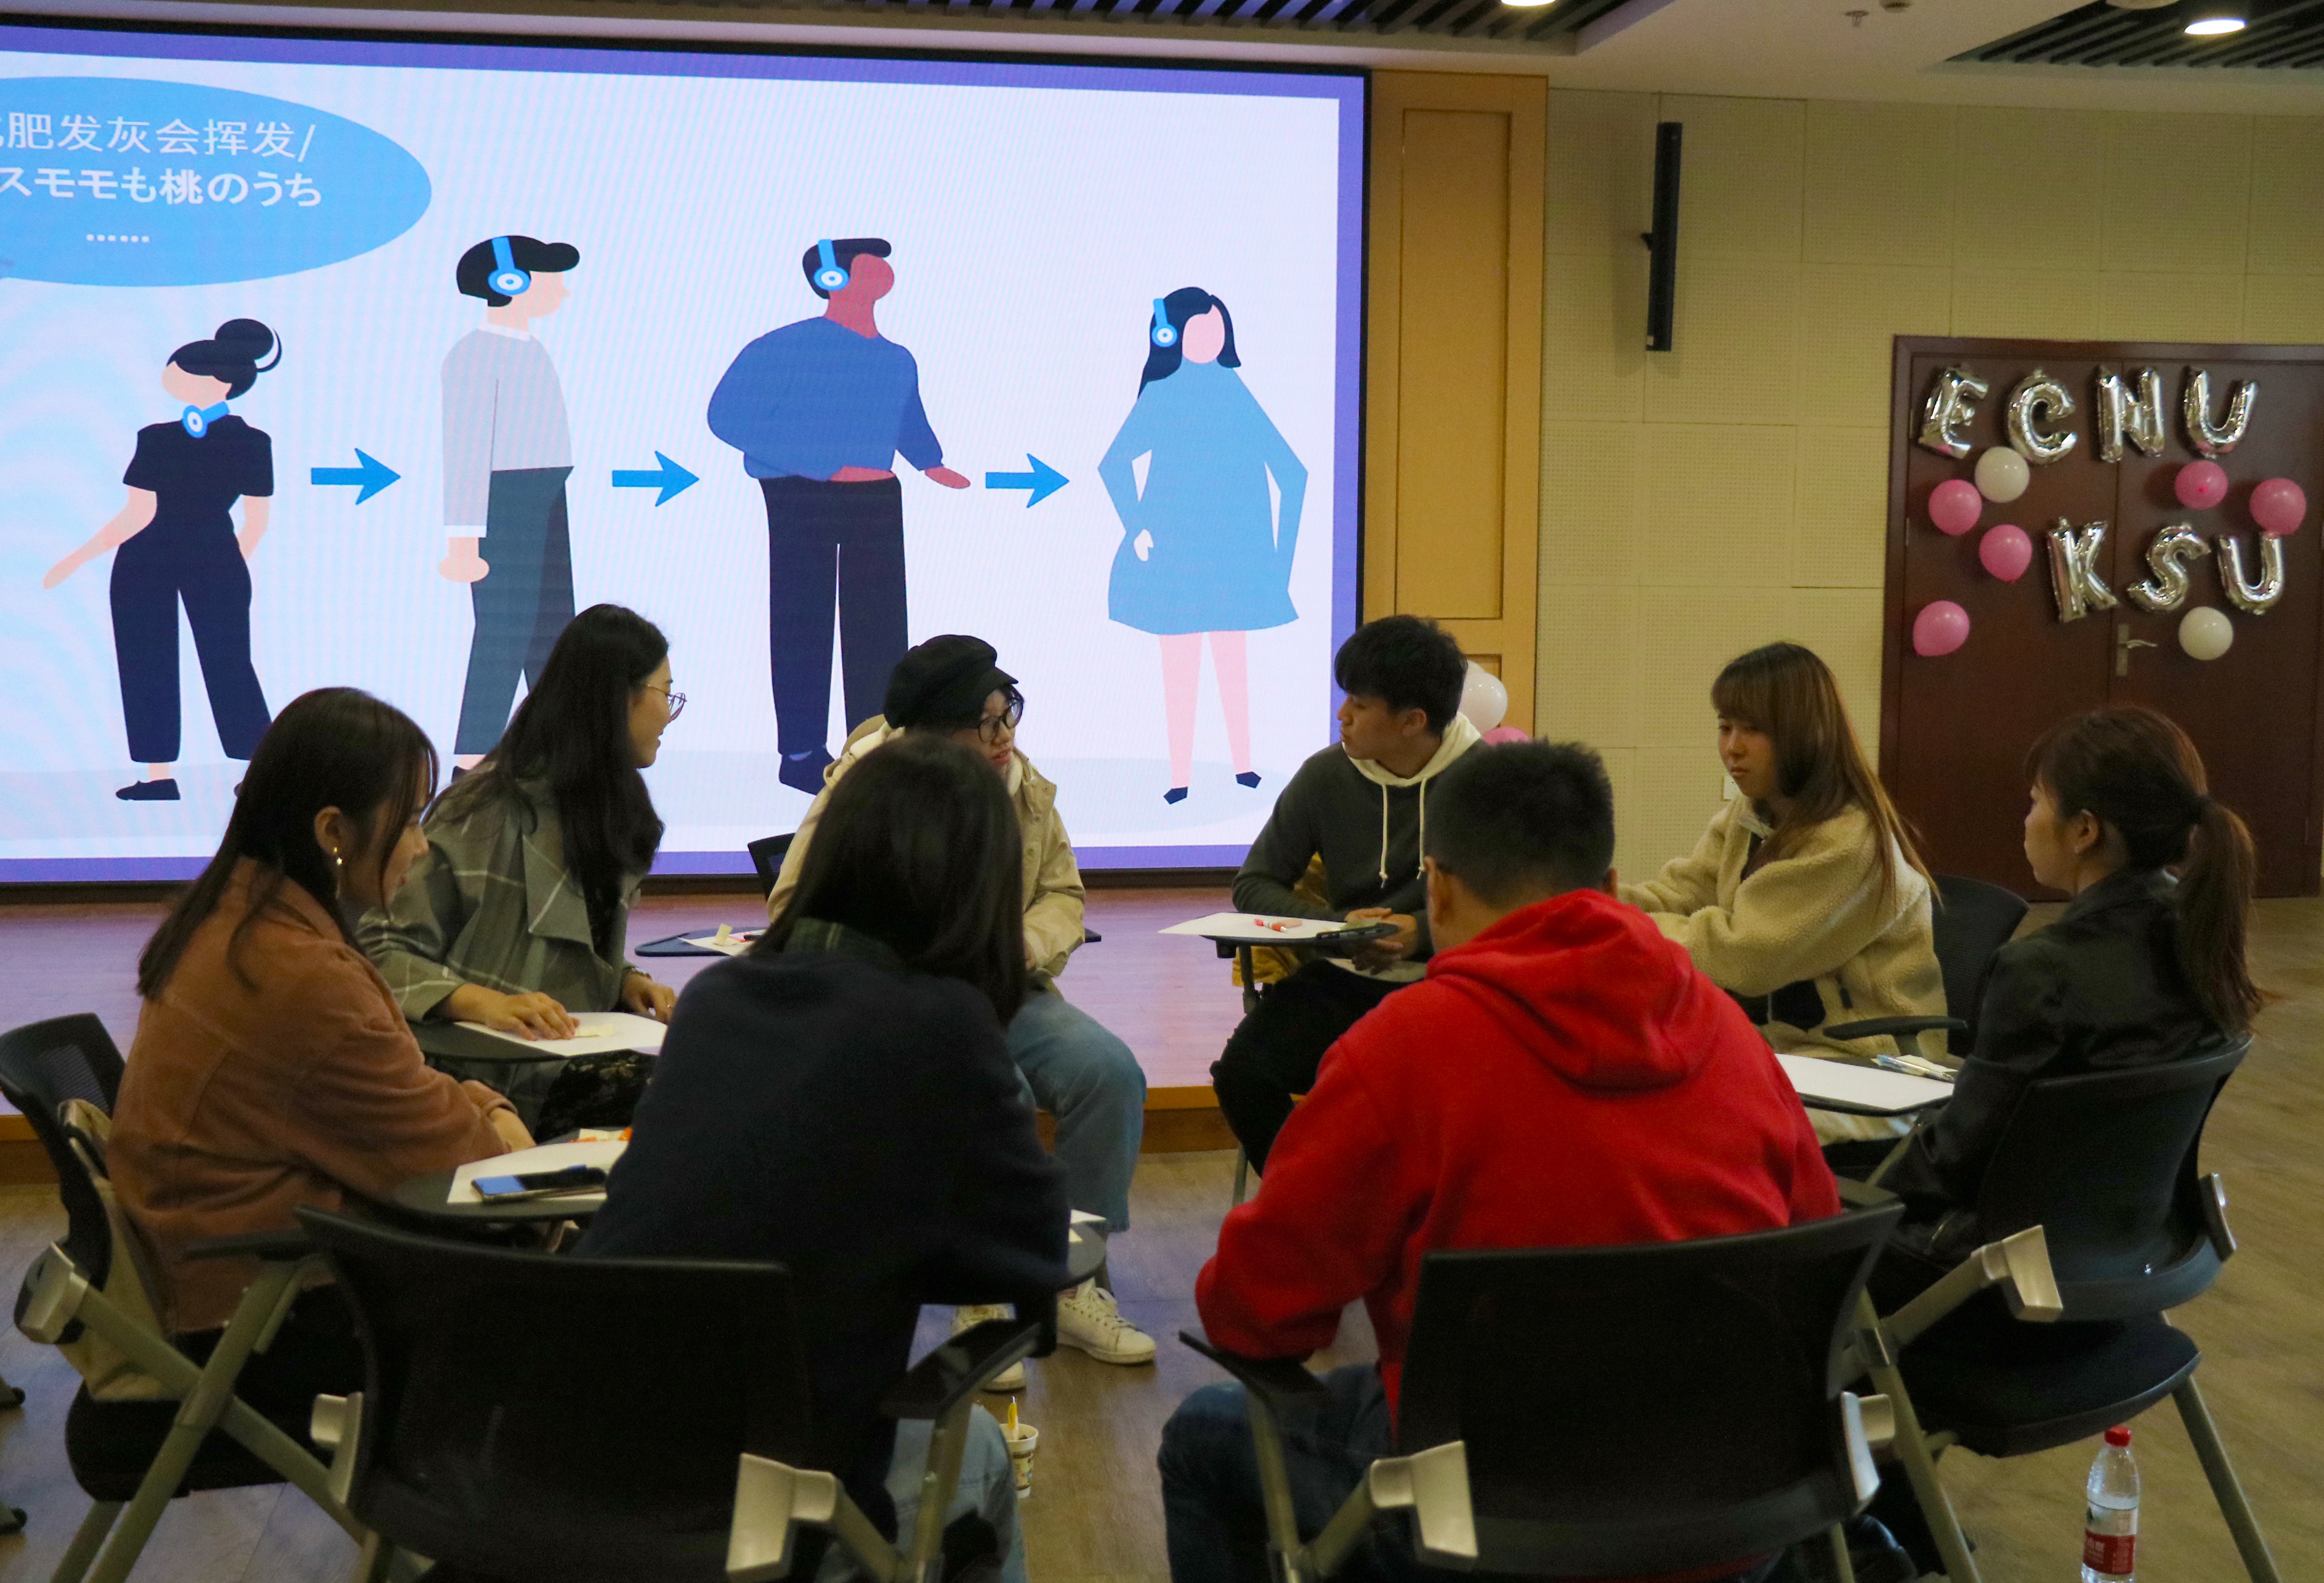 引进来的教学课堂,探索多元文化交流 ——京都产业大学师生来访我校